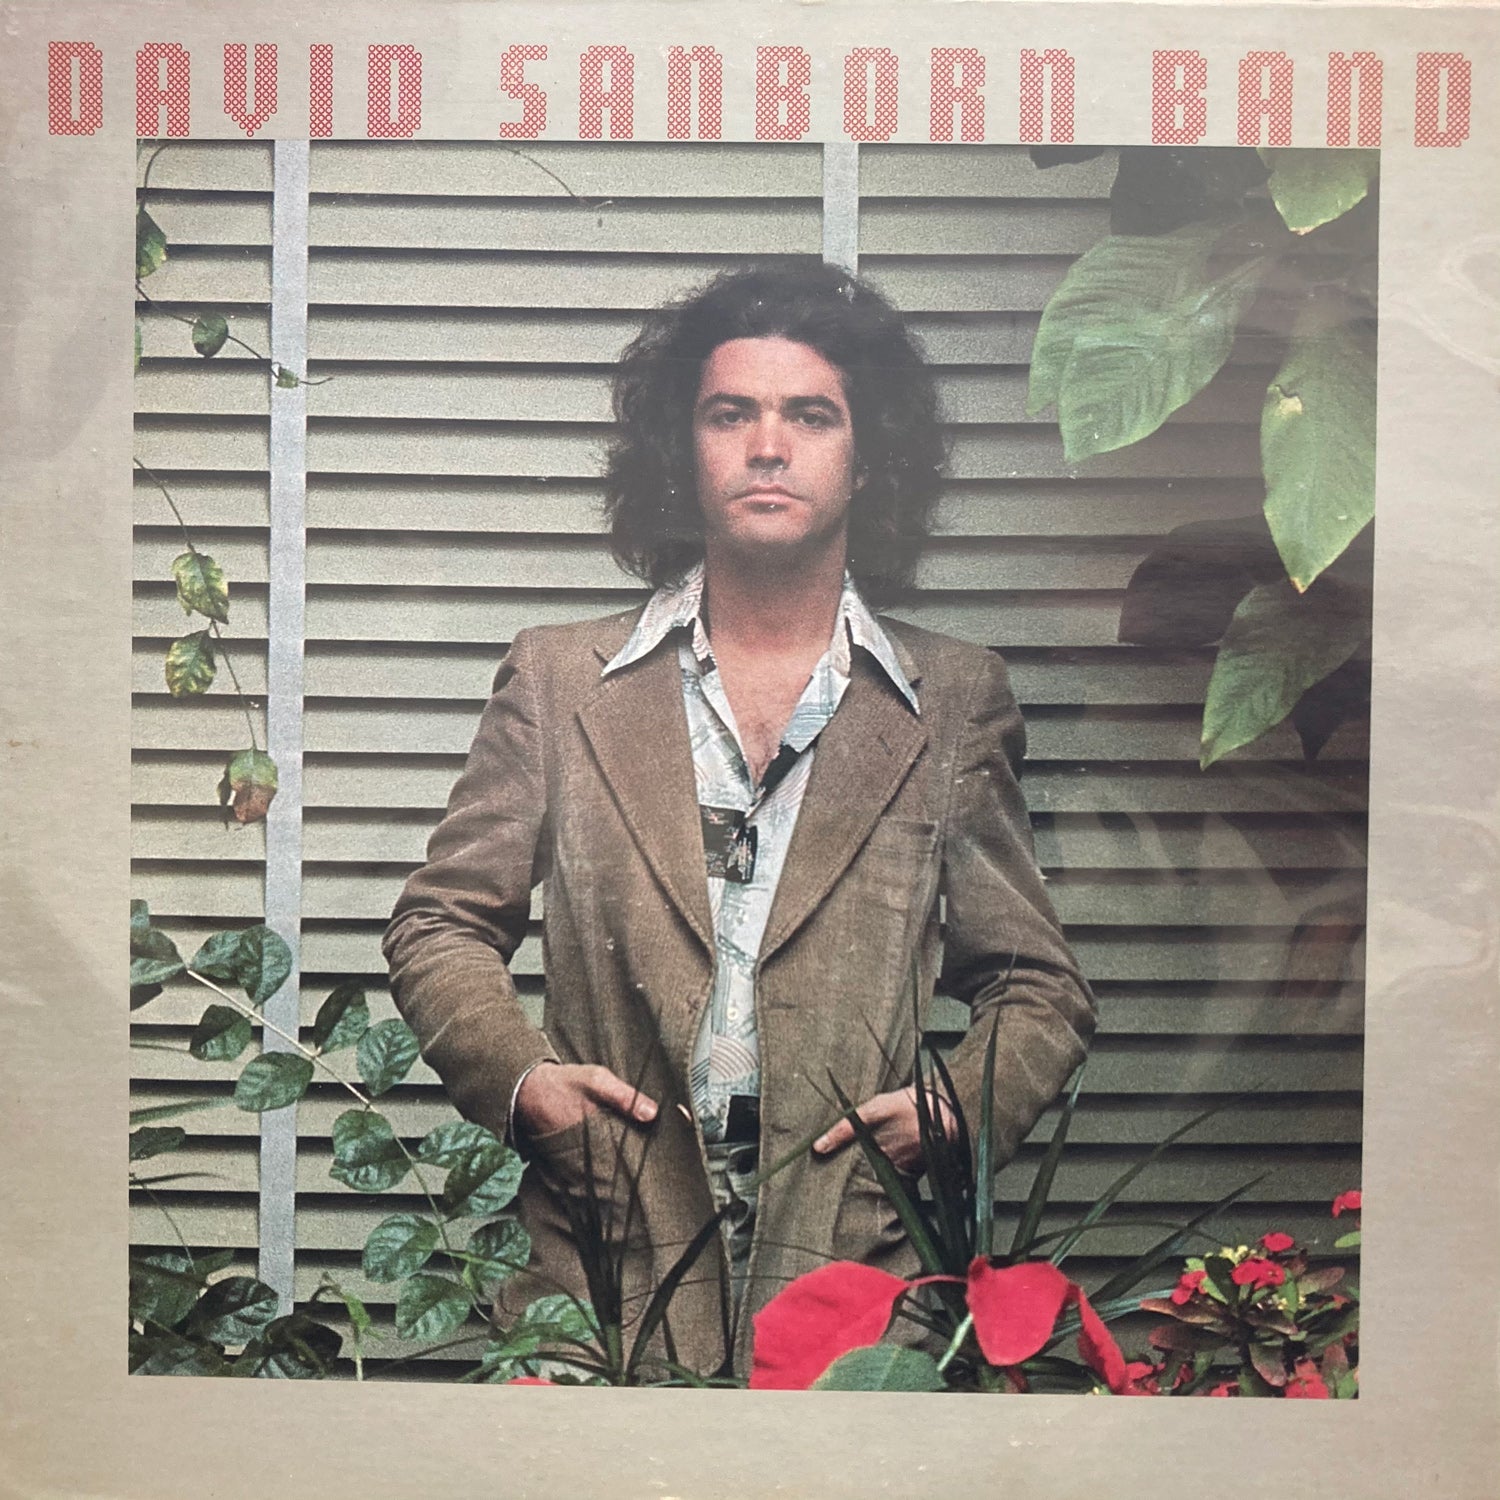 David Sanborn Band